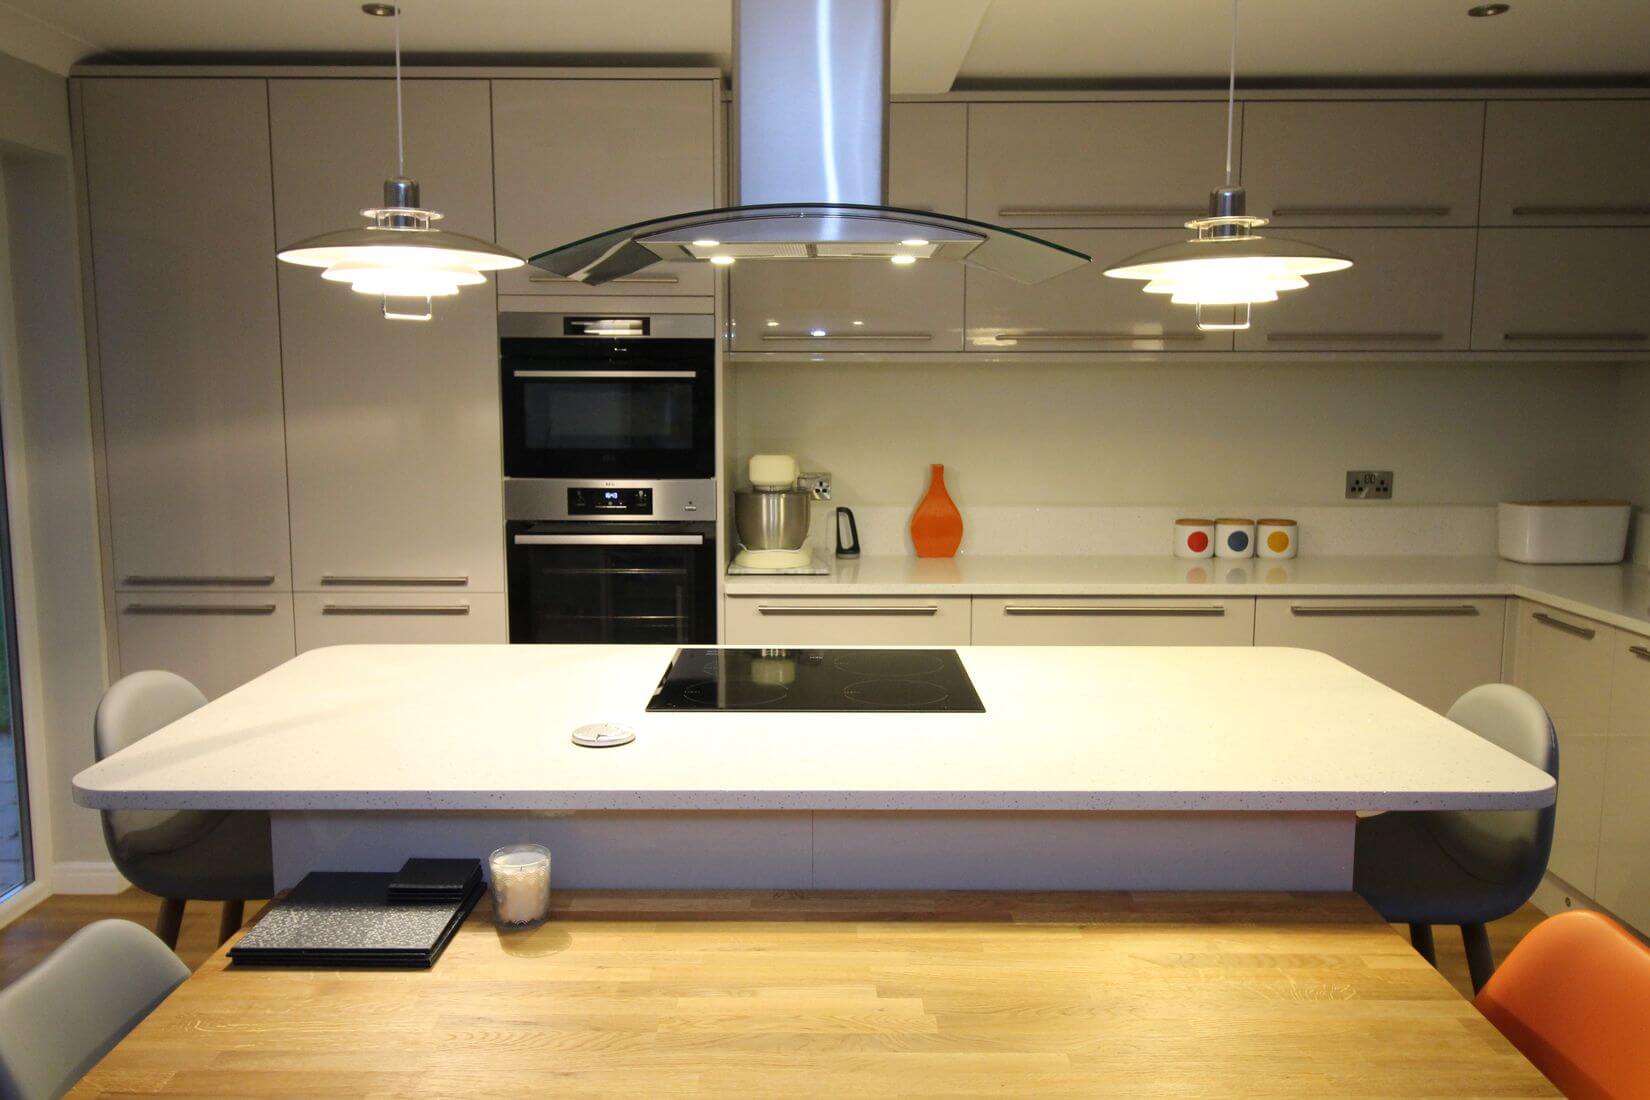 Sidlesham kitchen renovation